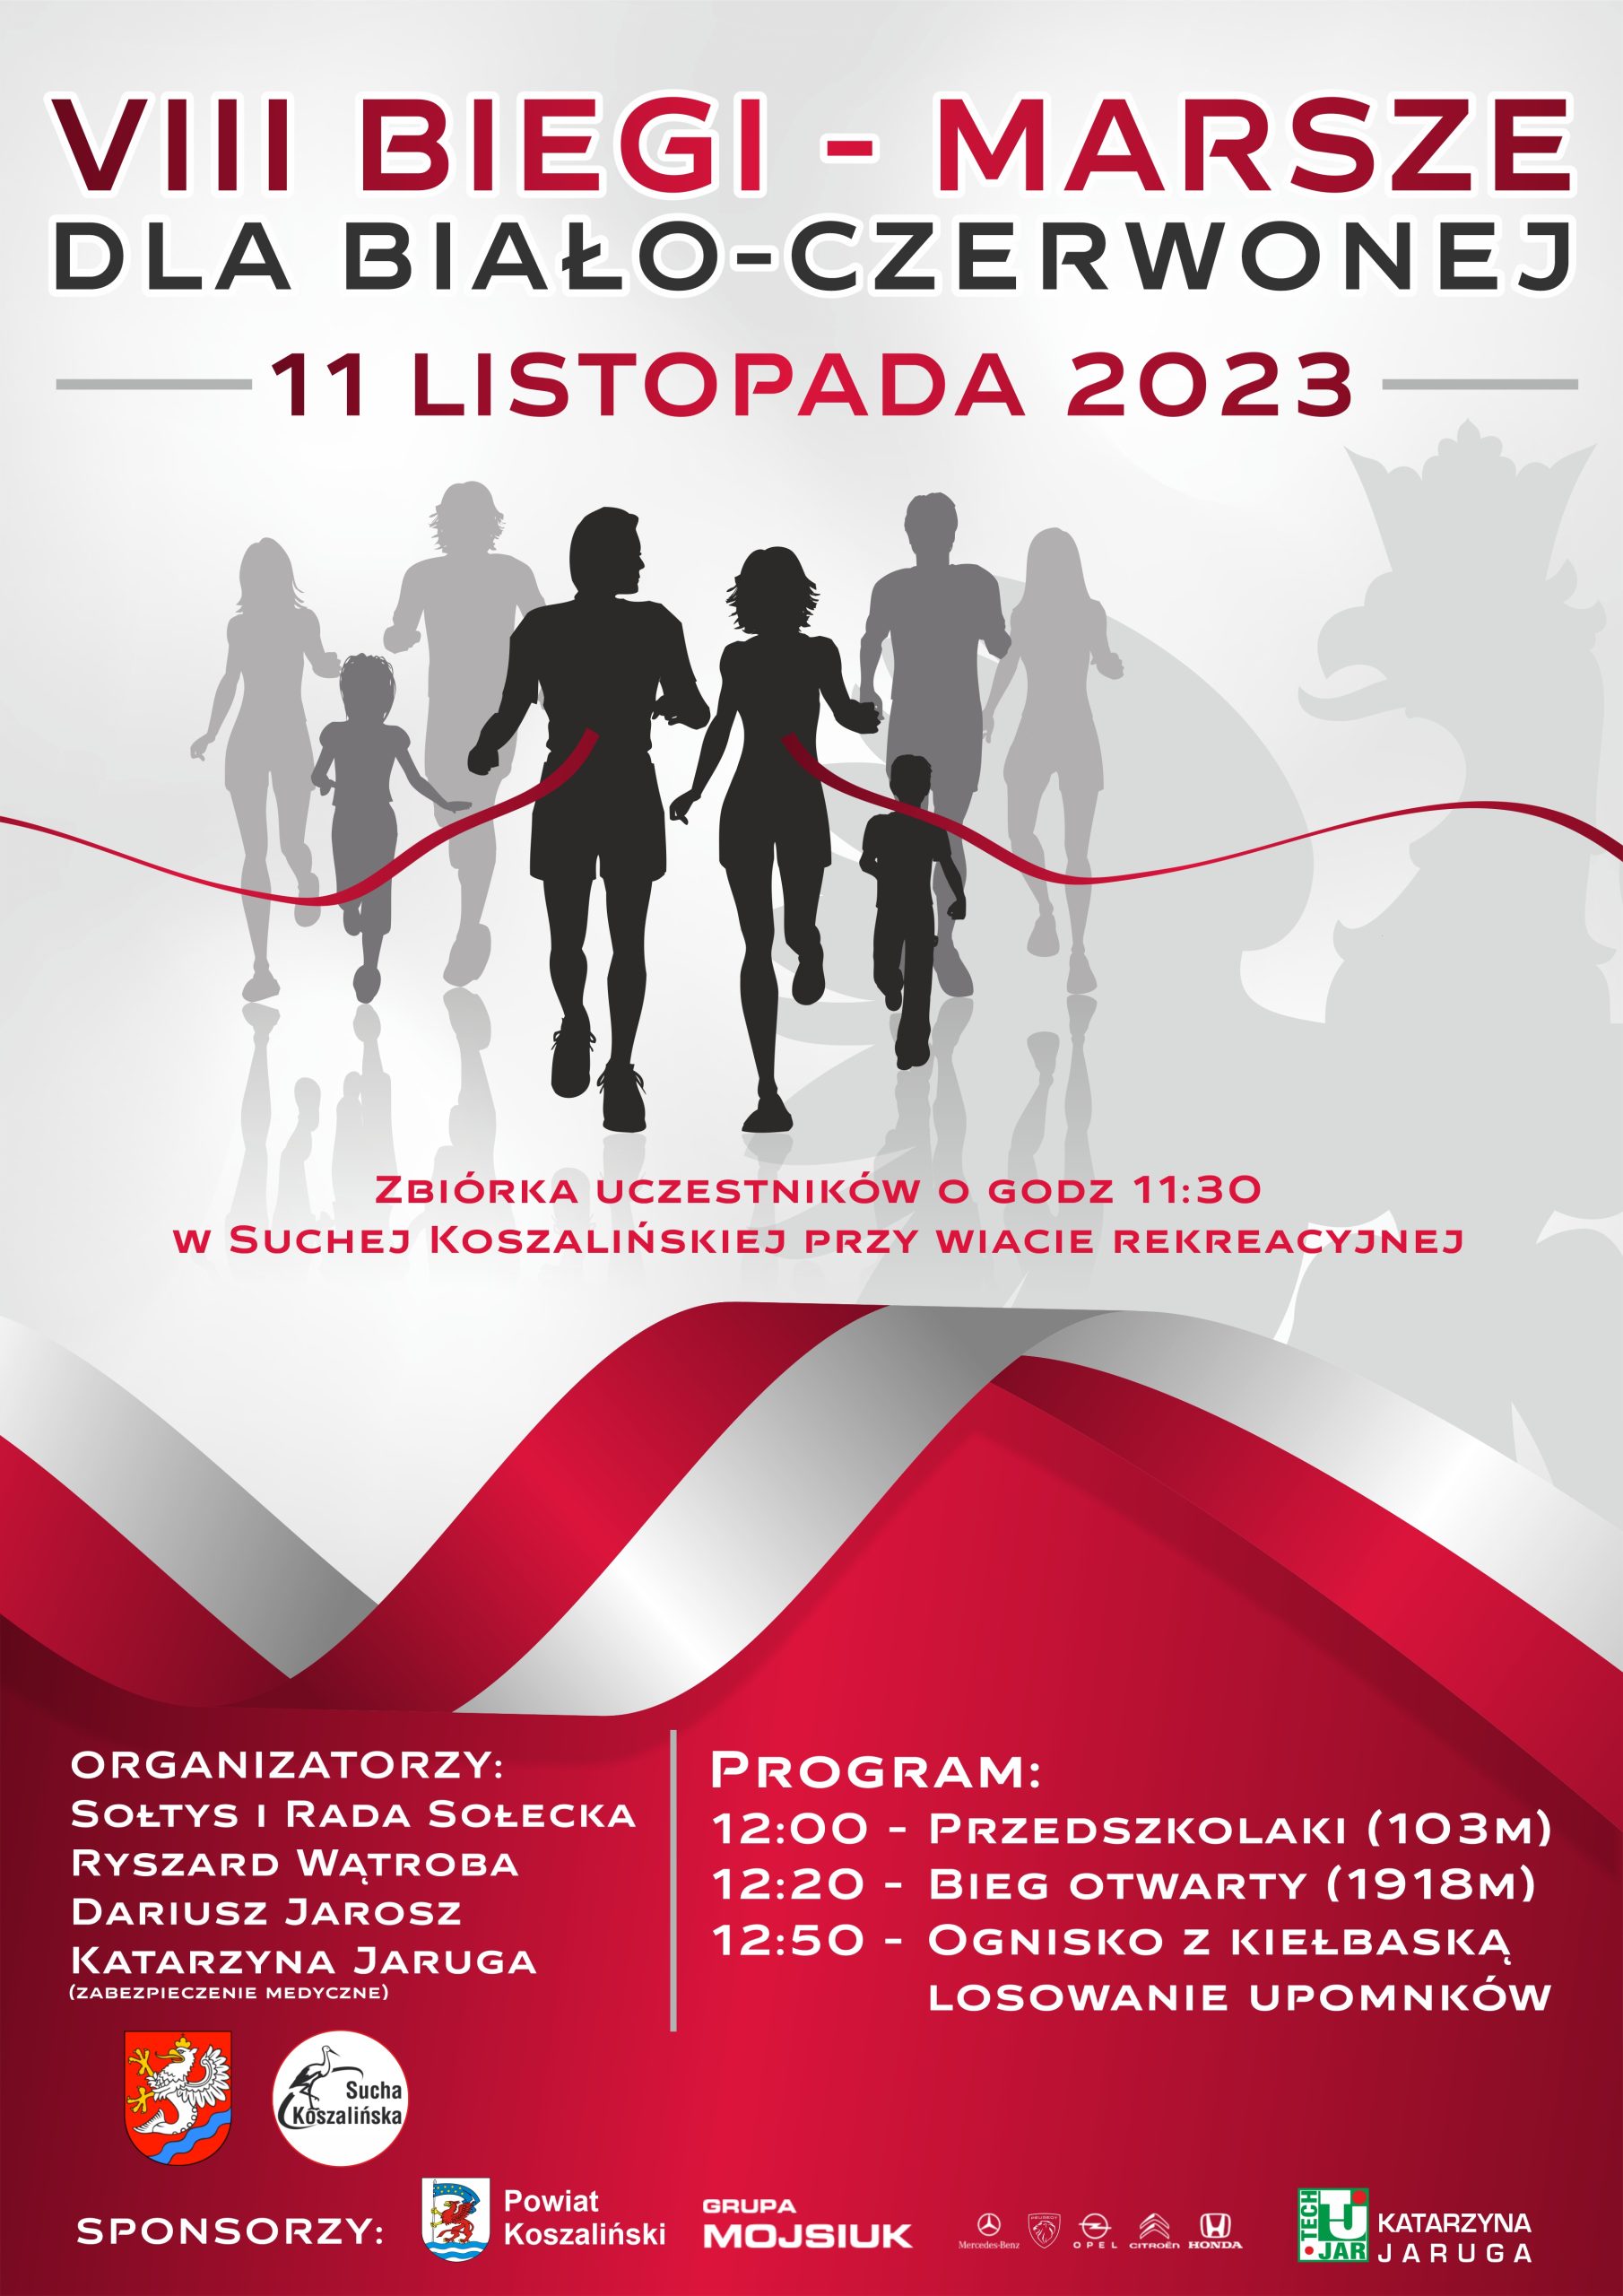 Plakat z zaproszeniem na 8 biegi marsze dla biało czerwonej w Suchej Koszalińskiej